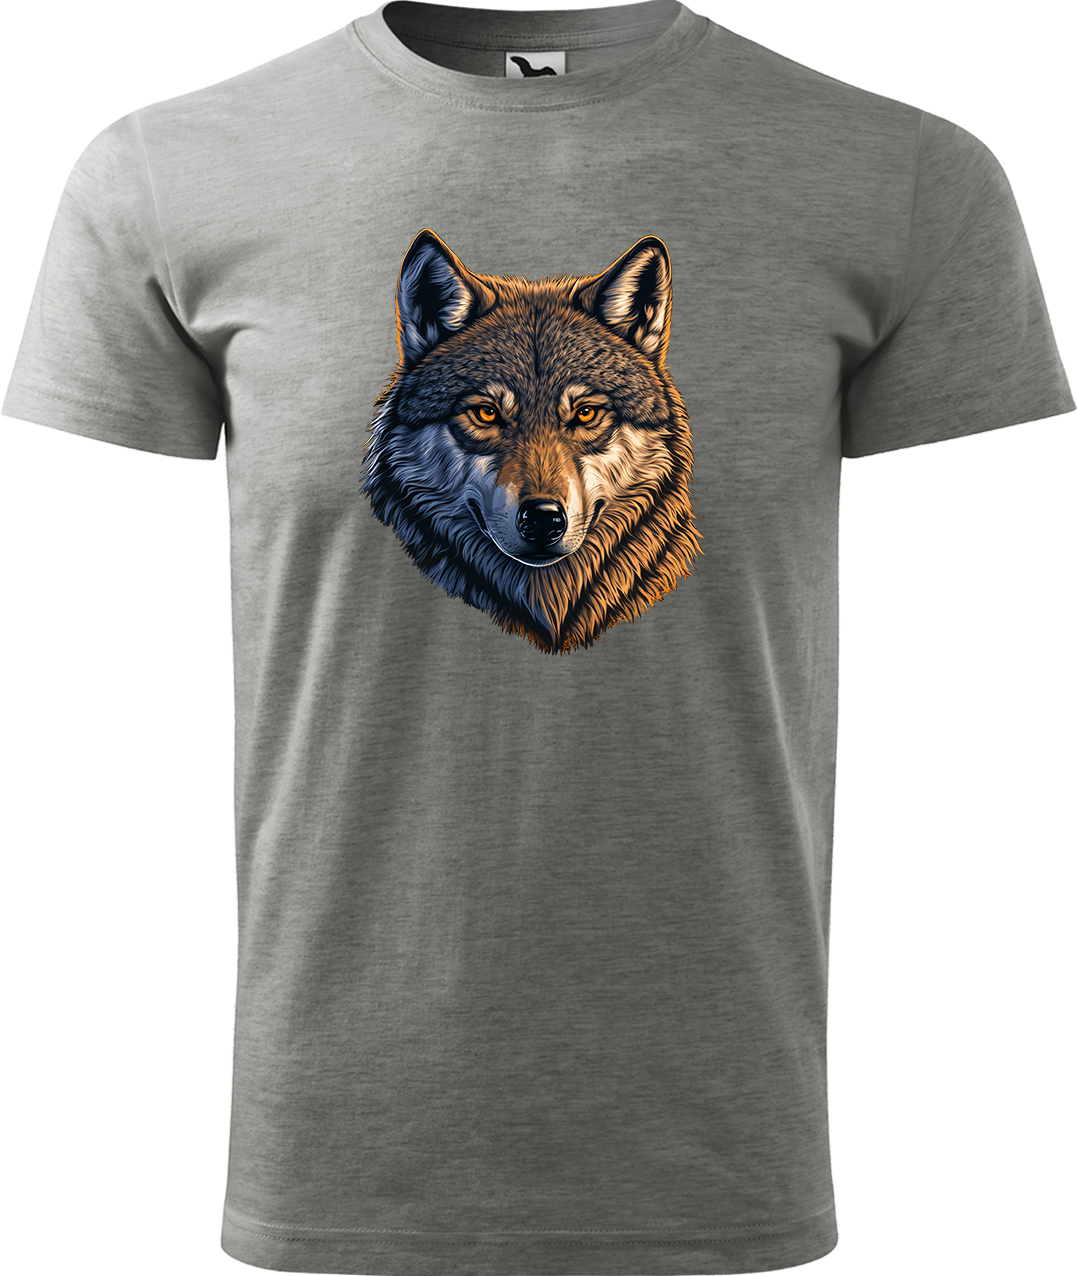 Pánské tričko s vlkem - Hlava vlka Velikost: 3XL, Barva: Tmavě šedý melír (12), Střih: pánský